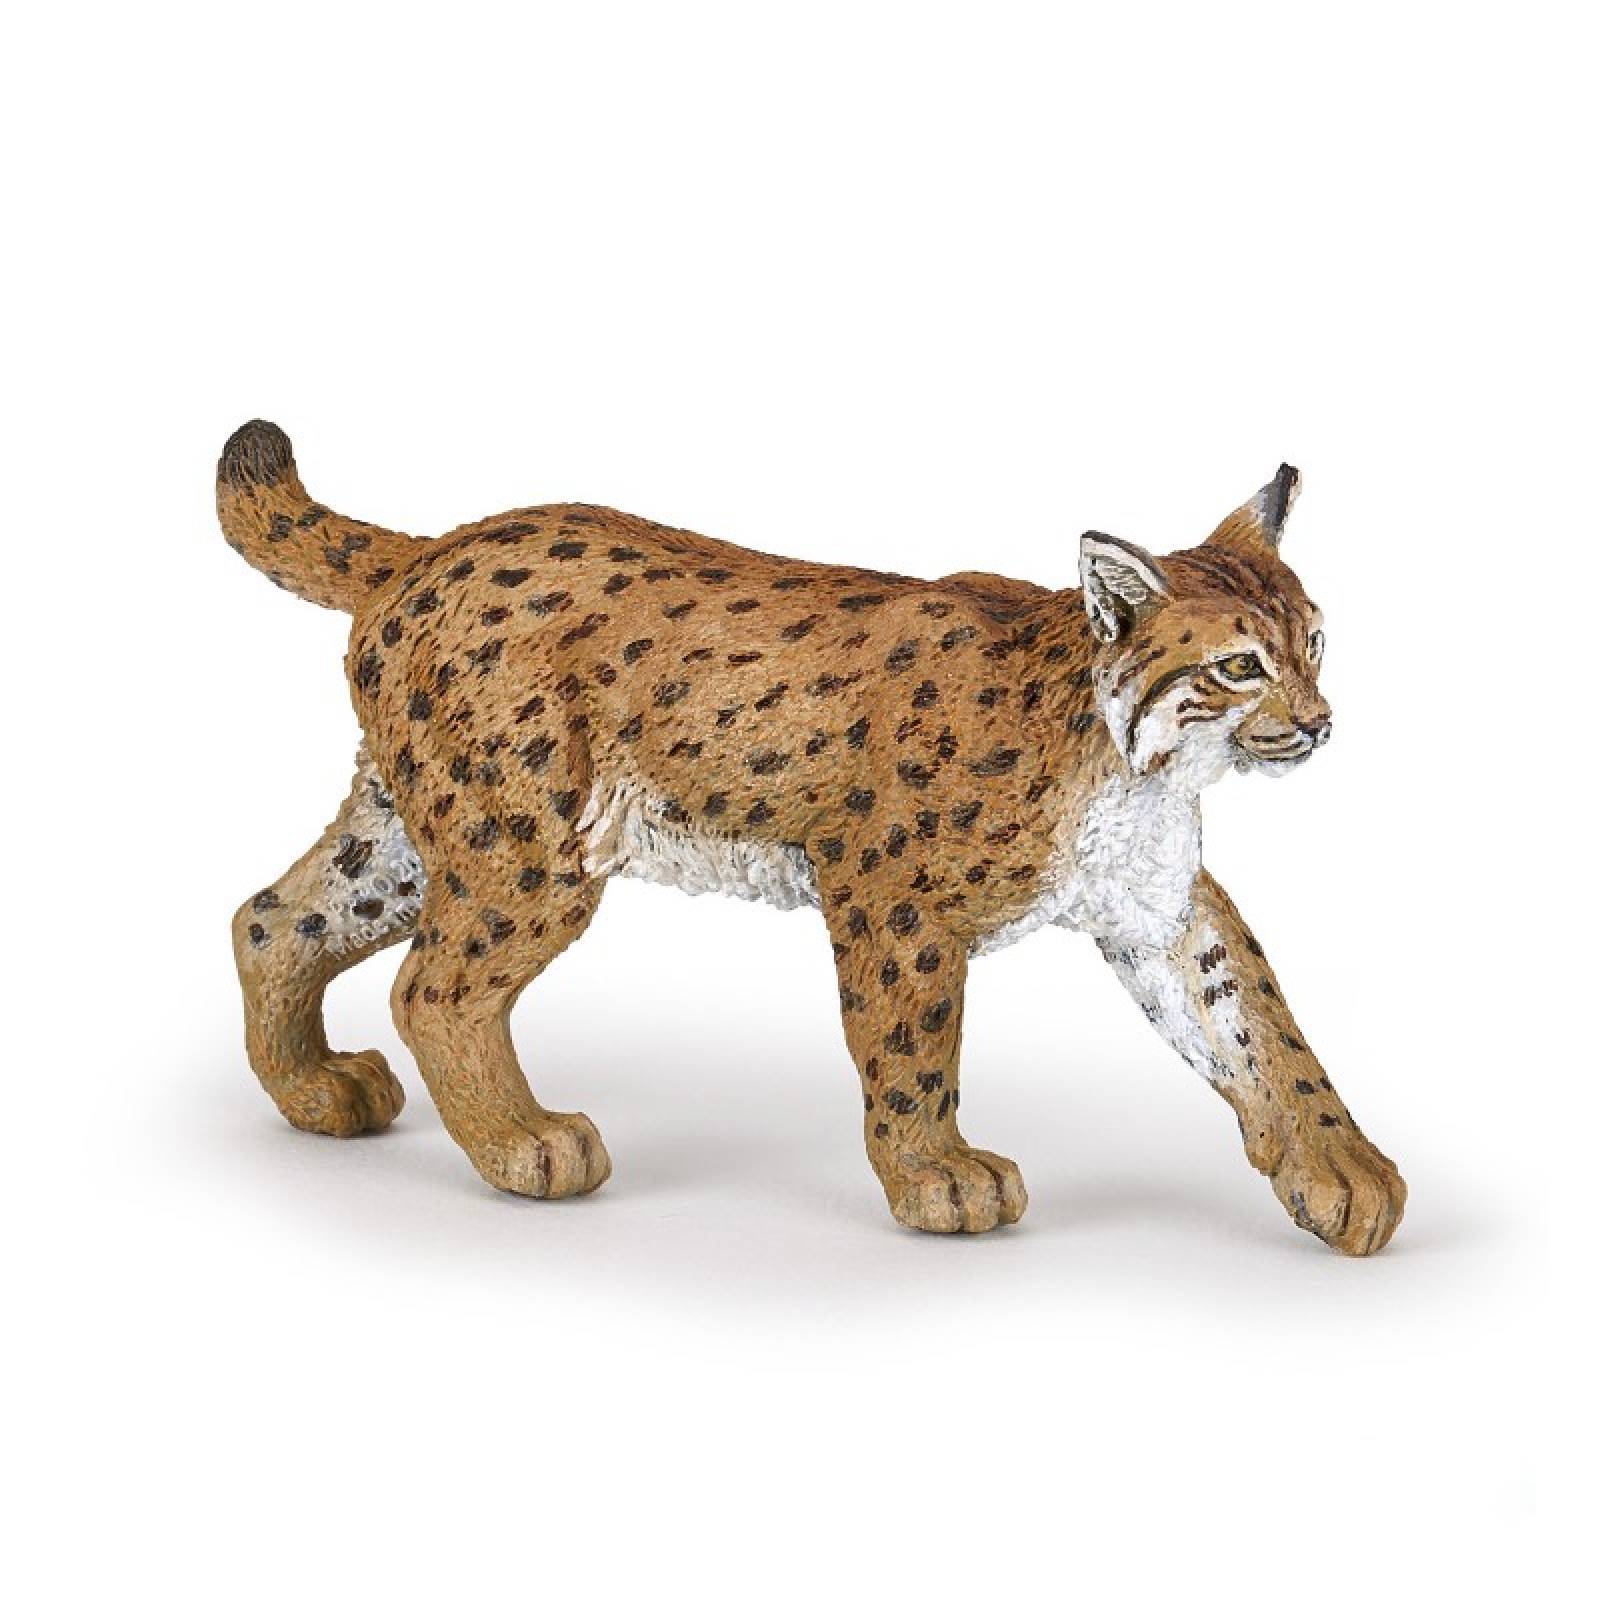 Lynx - Papo Animal Figure